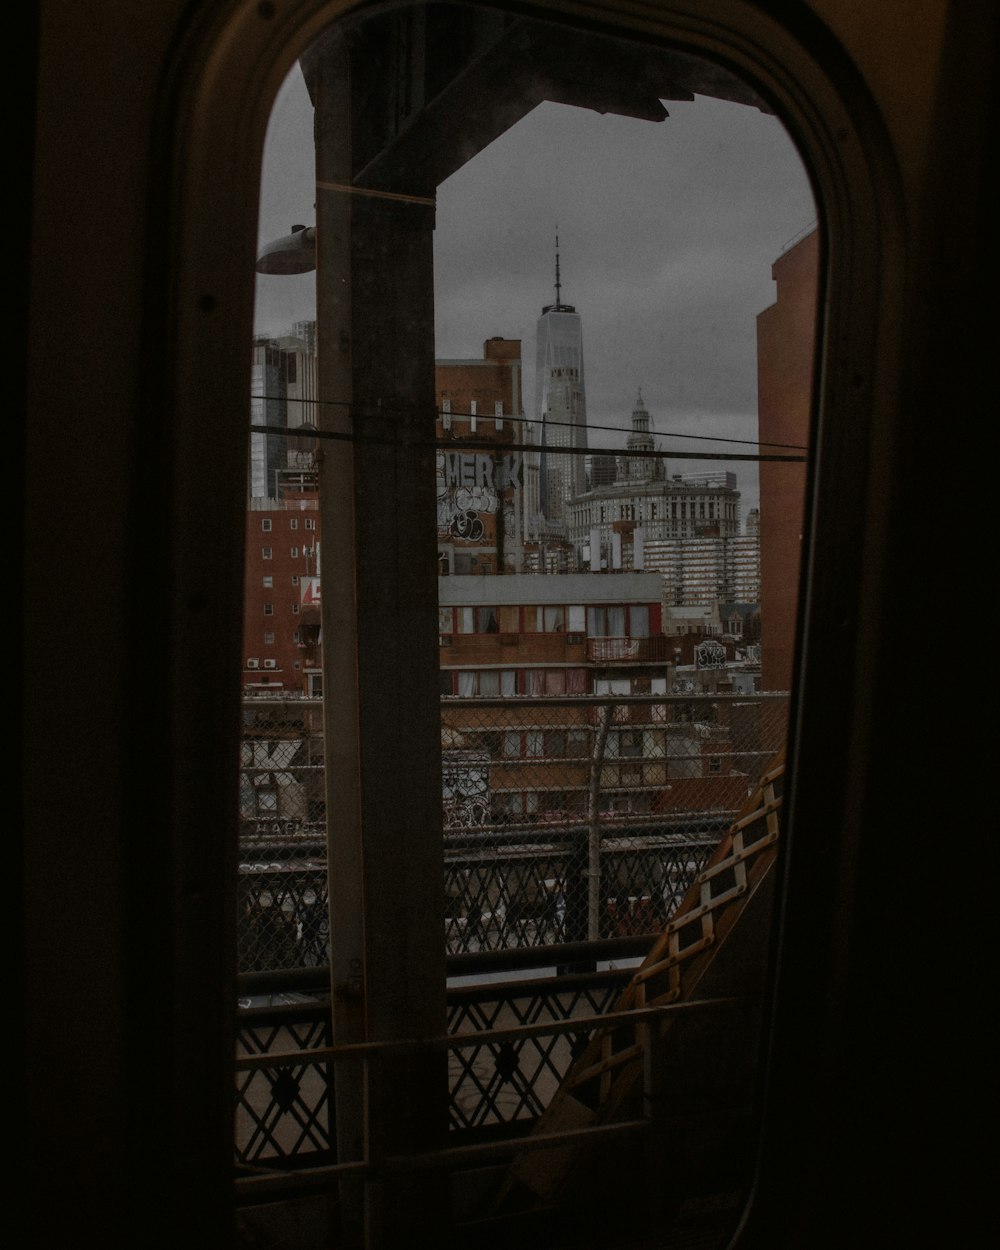 Una vista de una ciudad desde la ventana de un tren